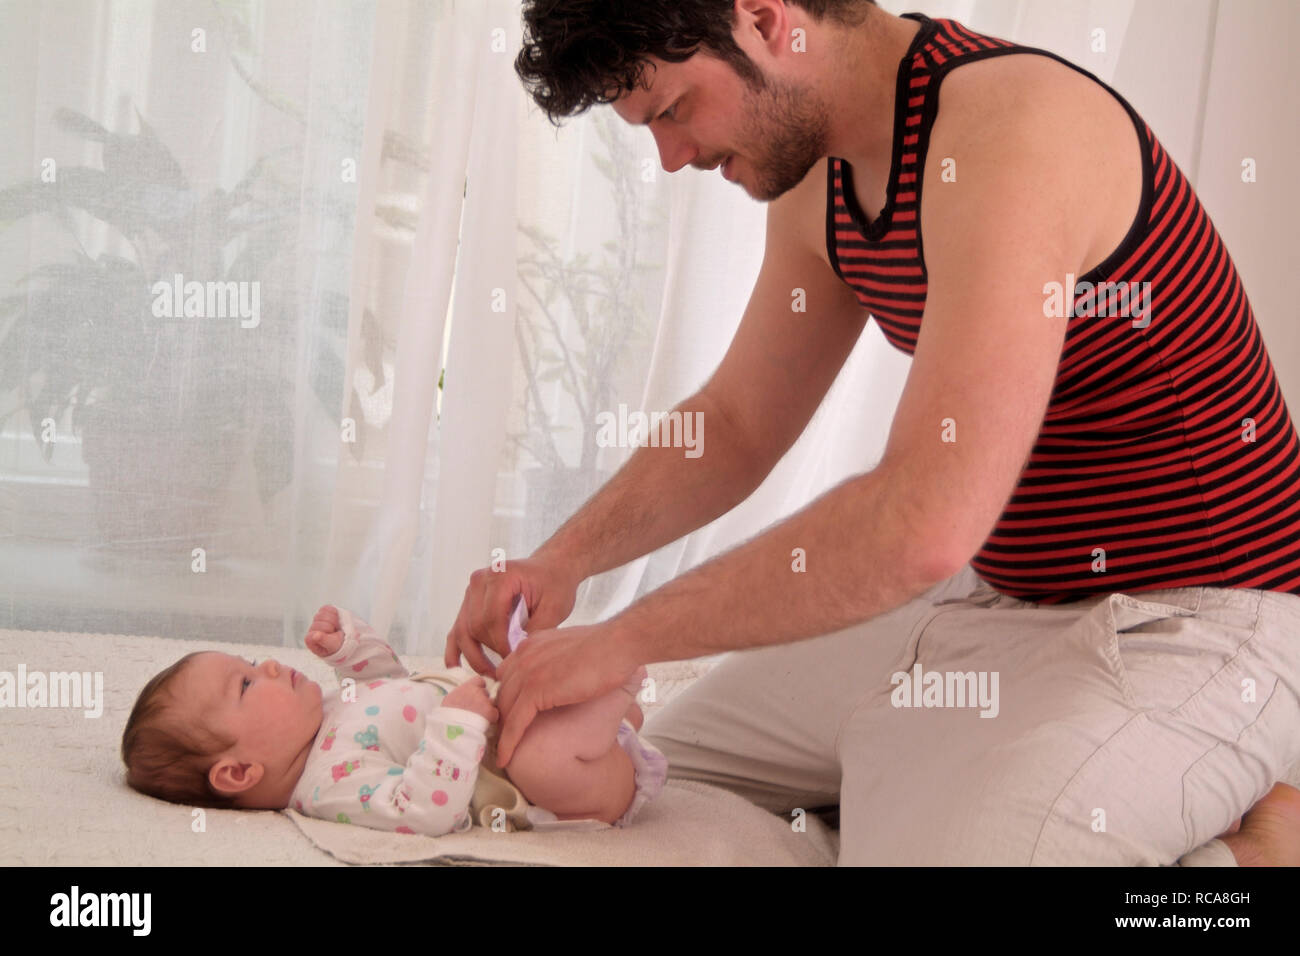 Vater kümmert sich um Säugling | père avec bébé en prenant soin Banque D'Images